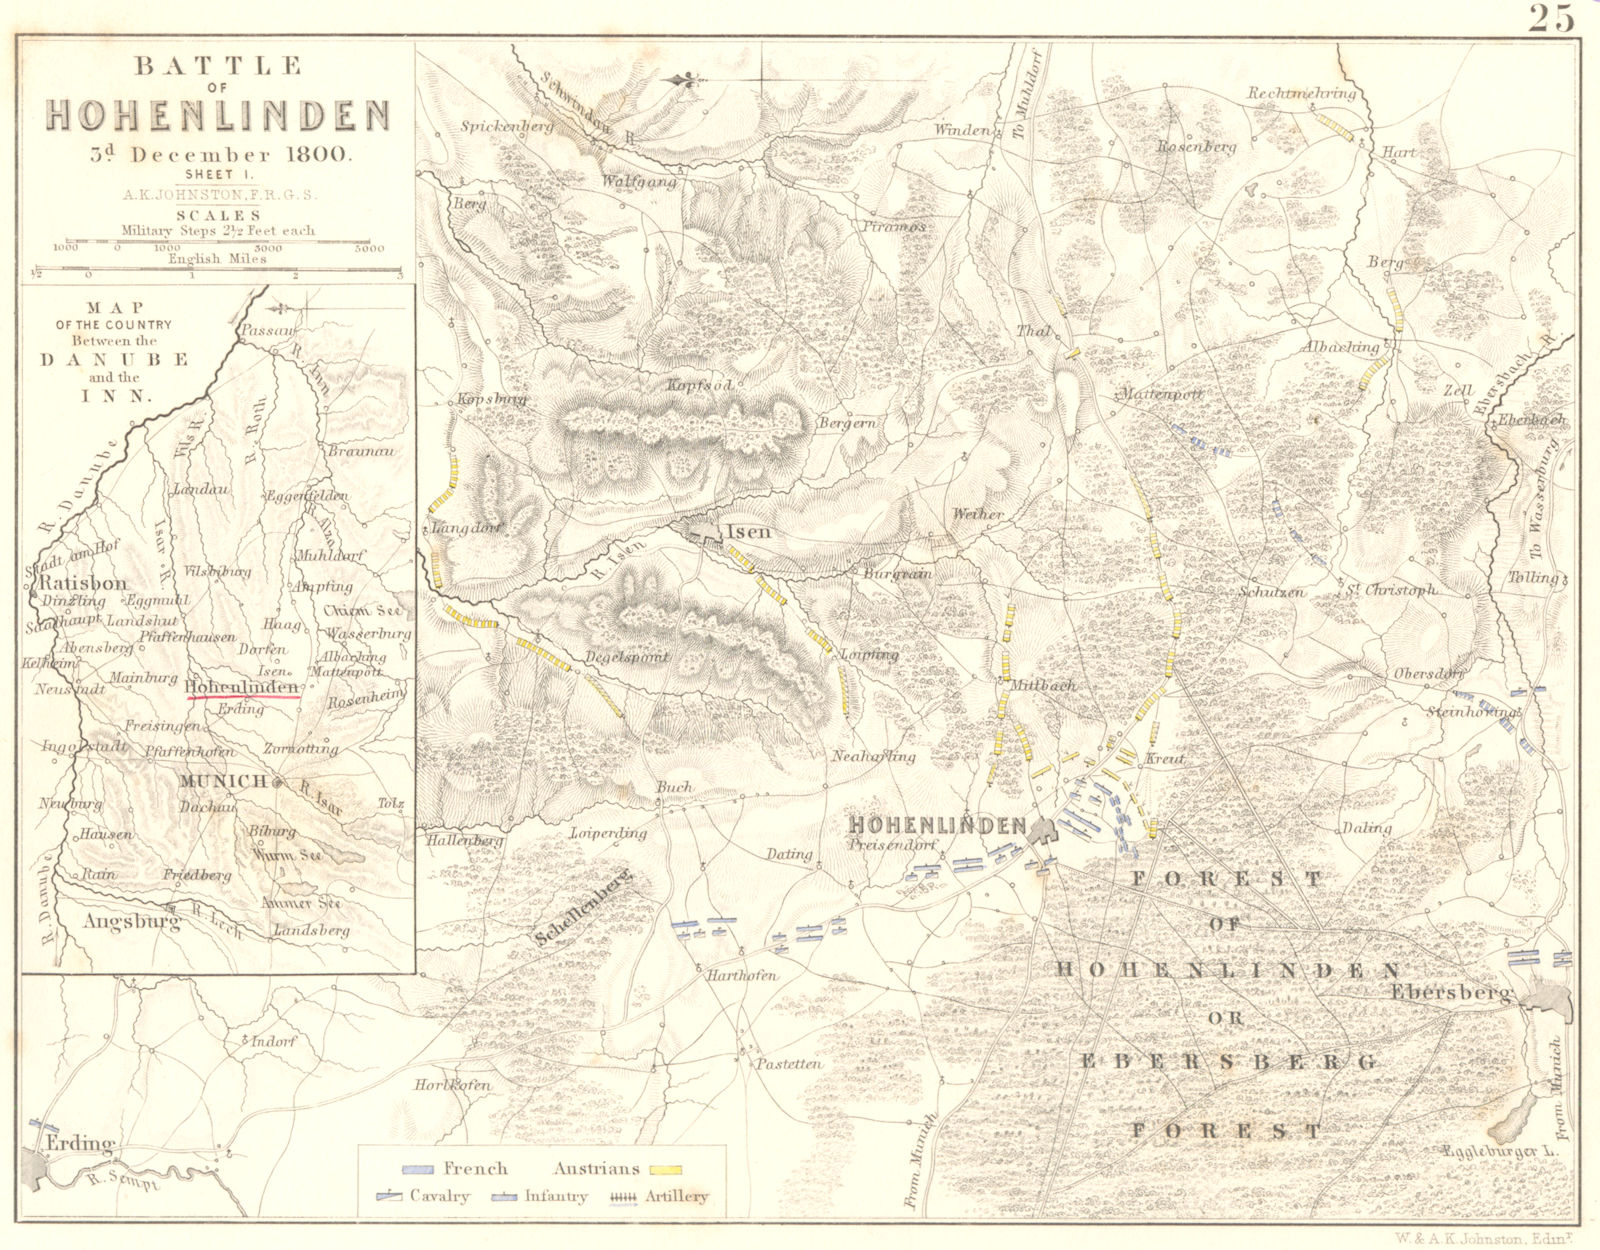 BATTLE OF HOHENLINDEN. 3rd December 1800 - sheet 1. Germany 1848 old map